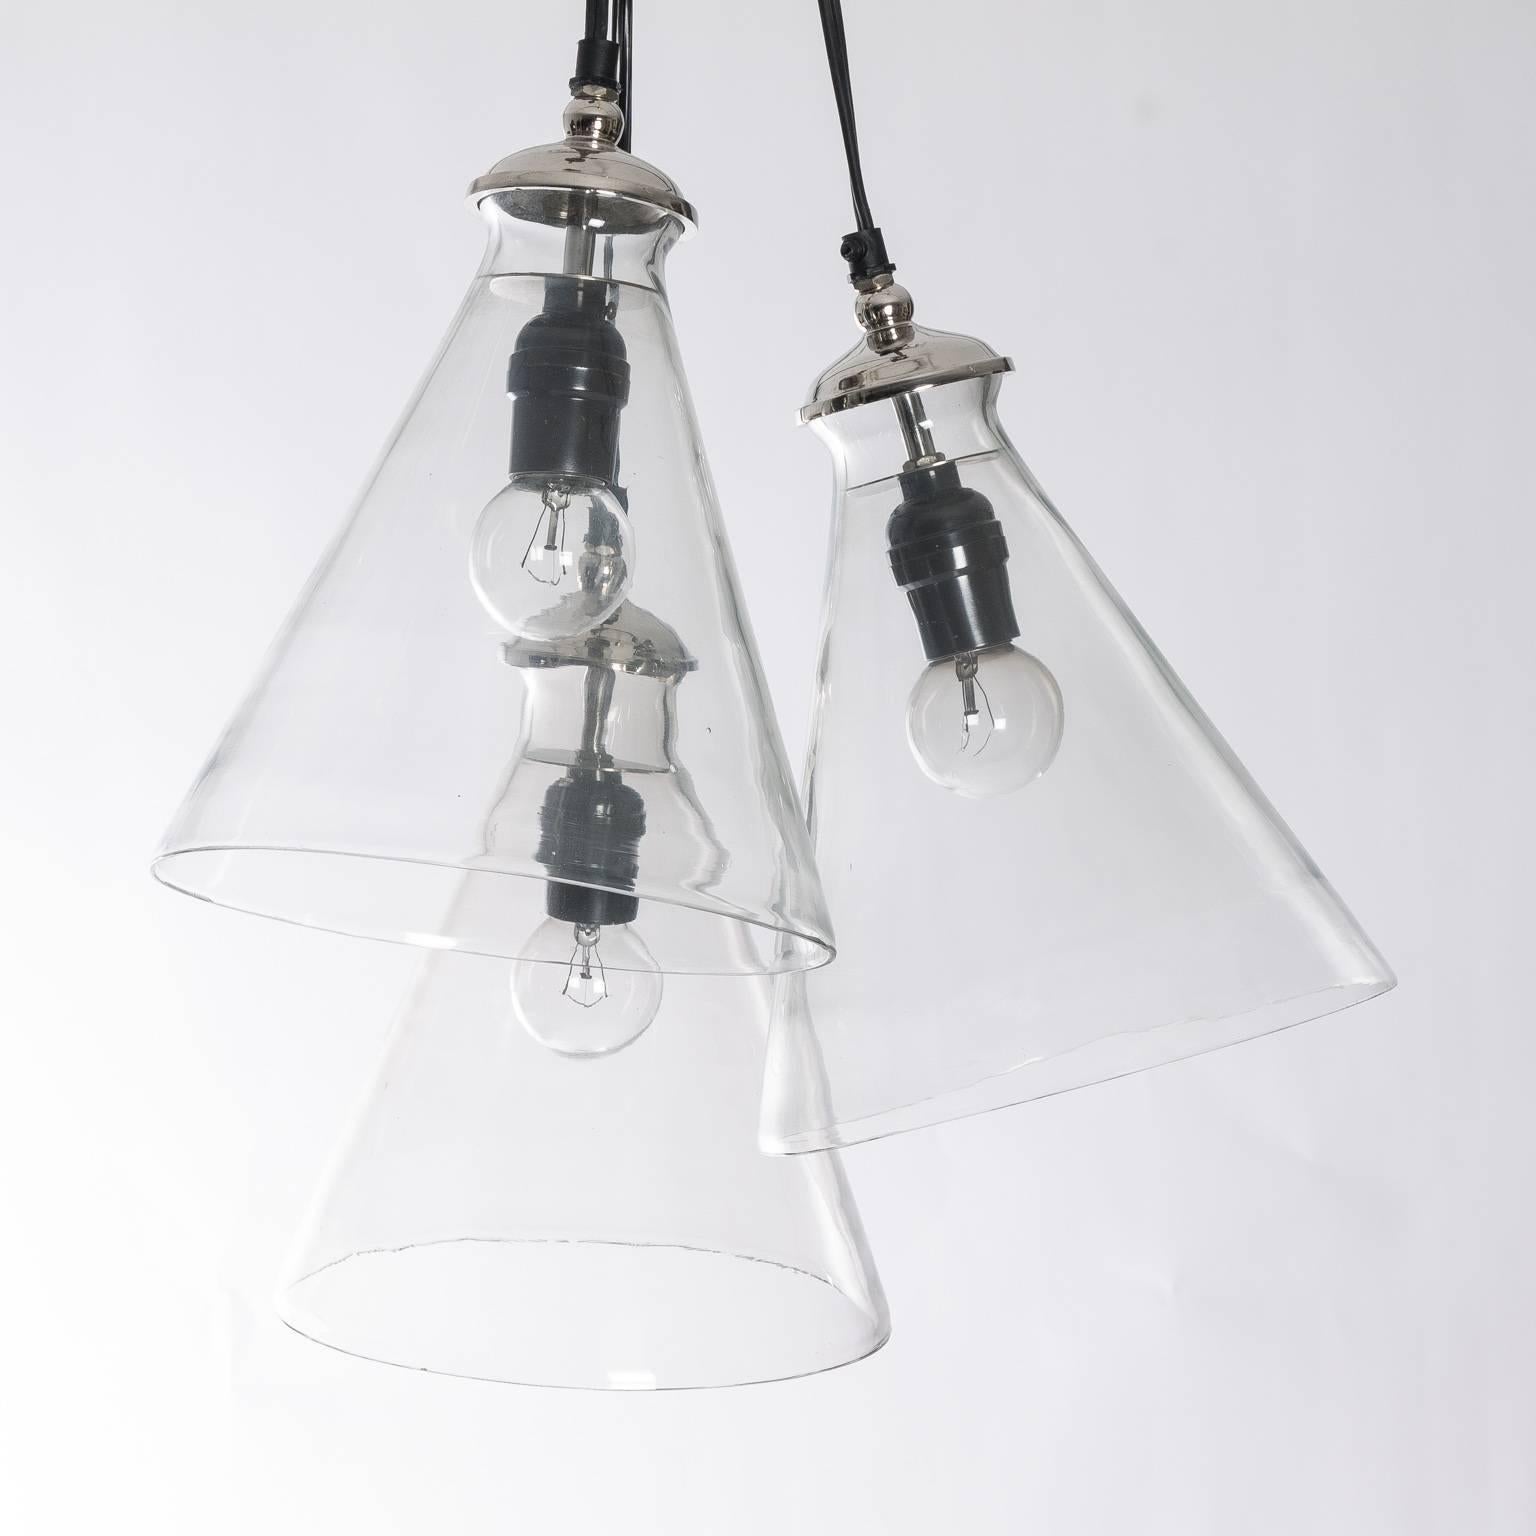 Blown glass pendant light fixture.
 